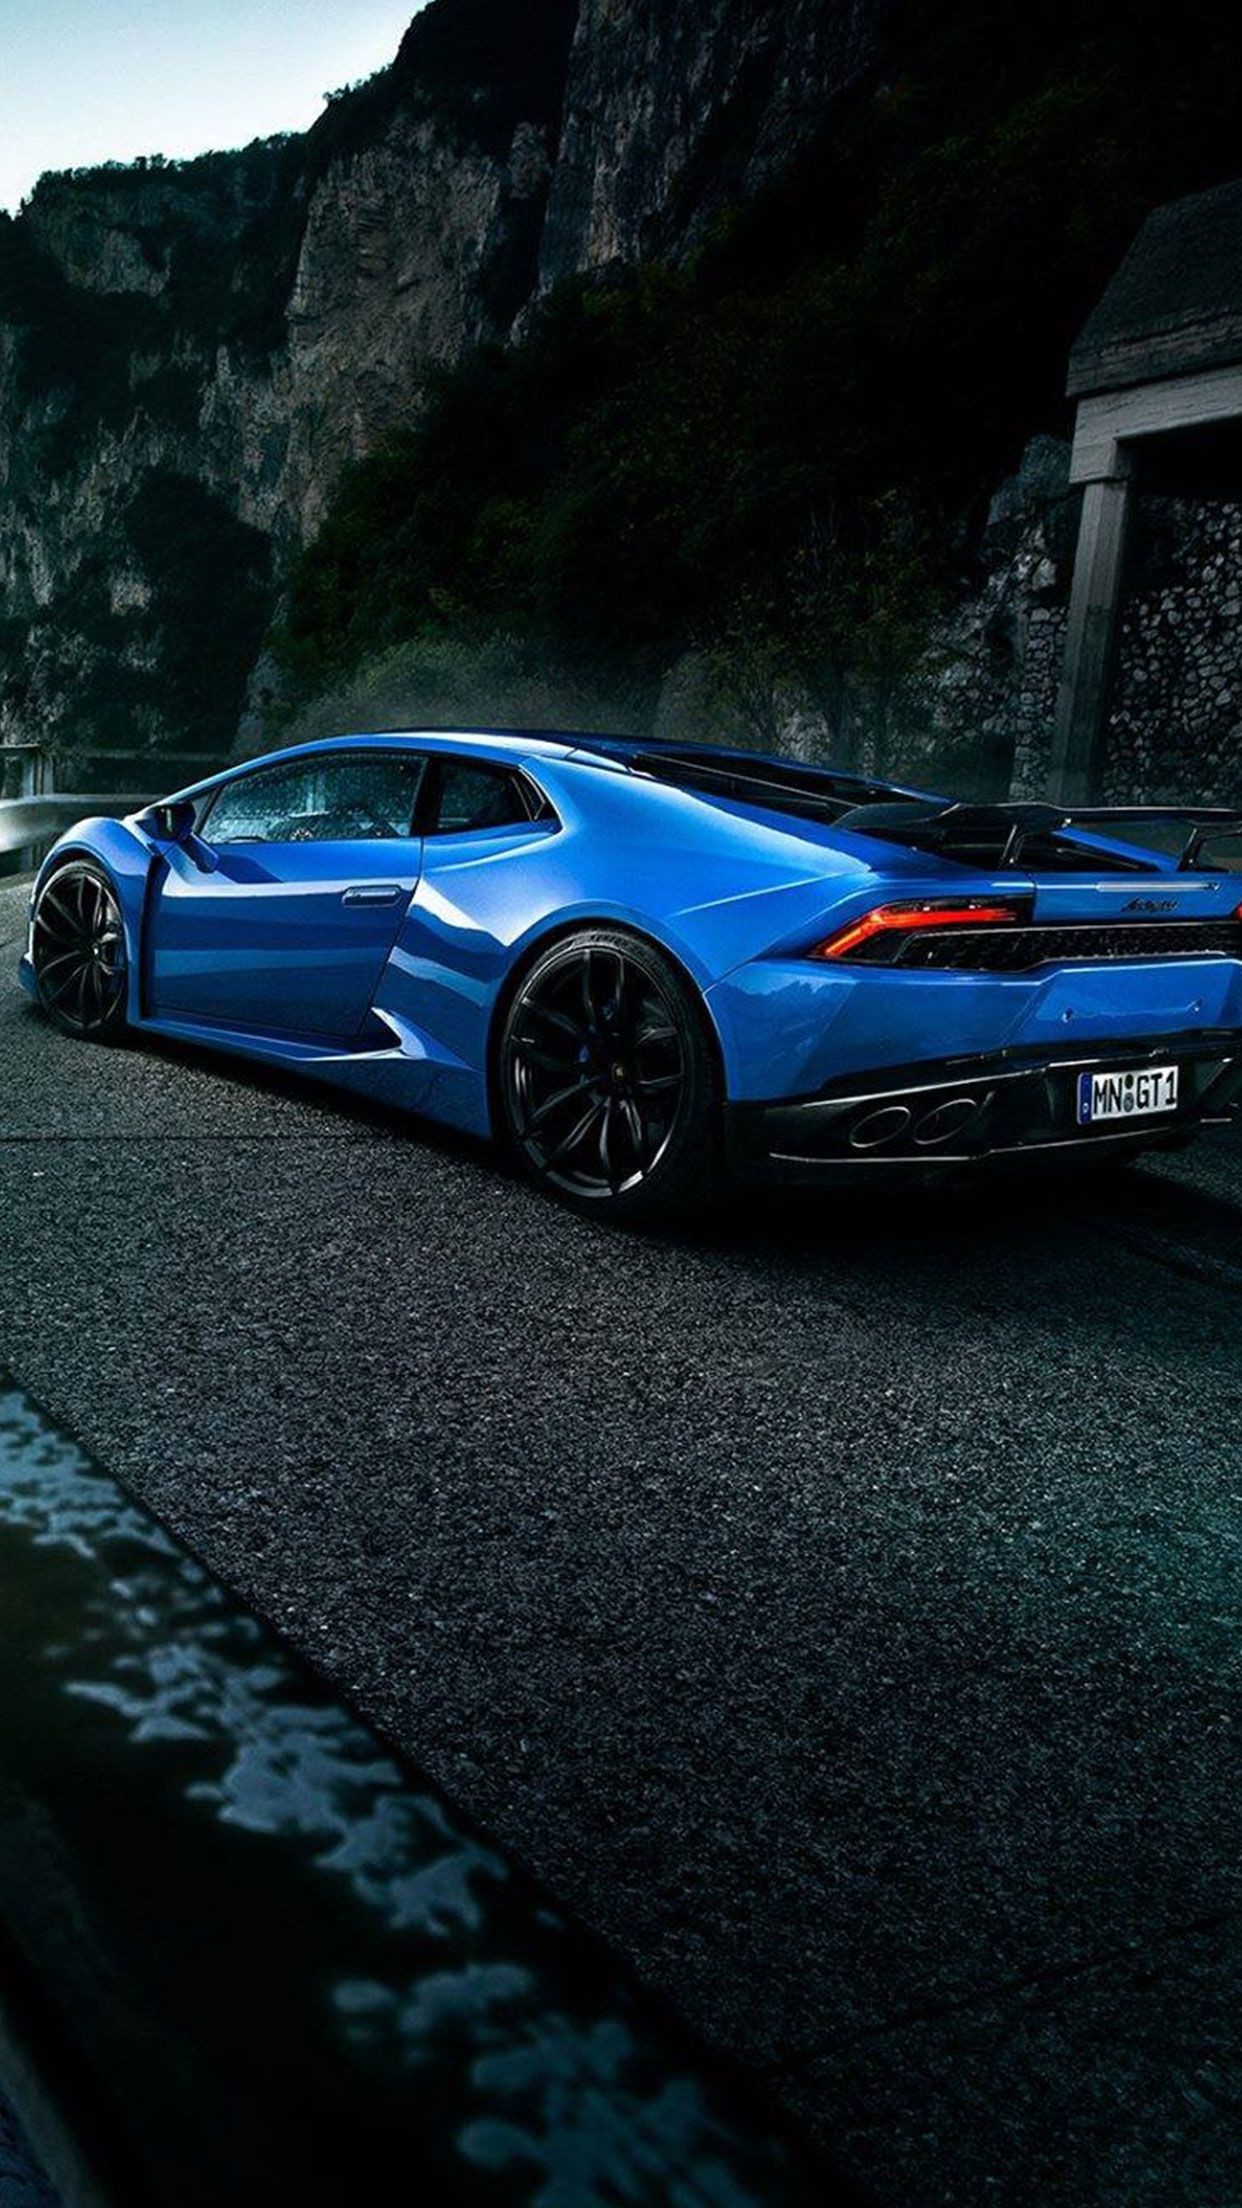 1242x2208 Blue Lamborghini car wallpaper #Iphone #android #blue #lamborghini #car…